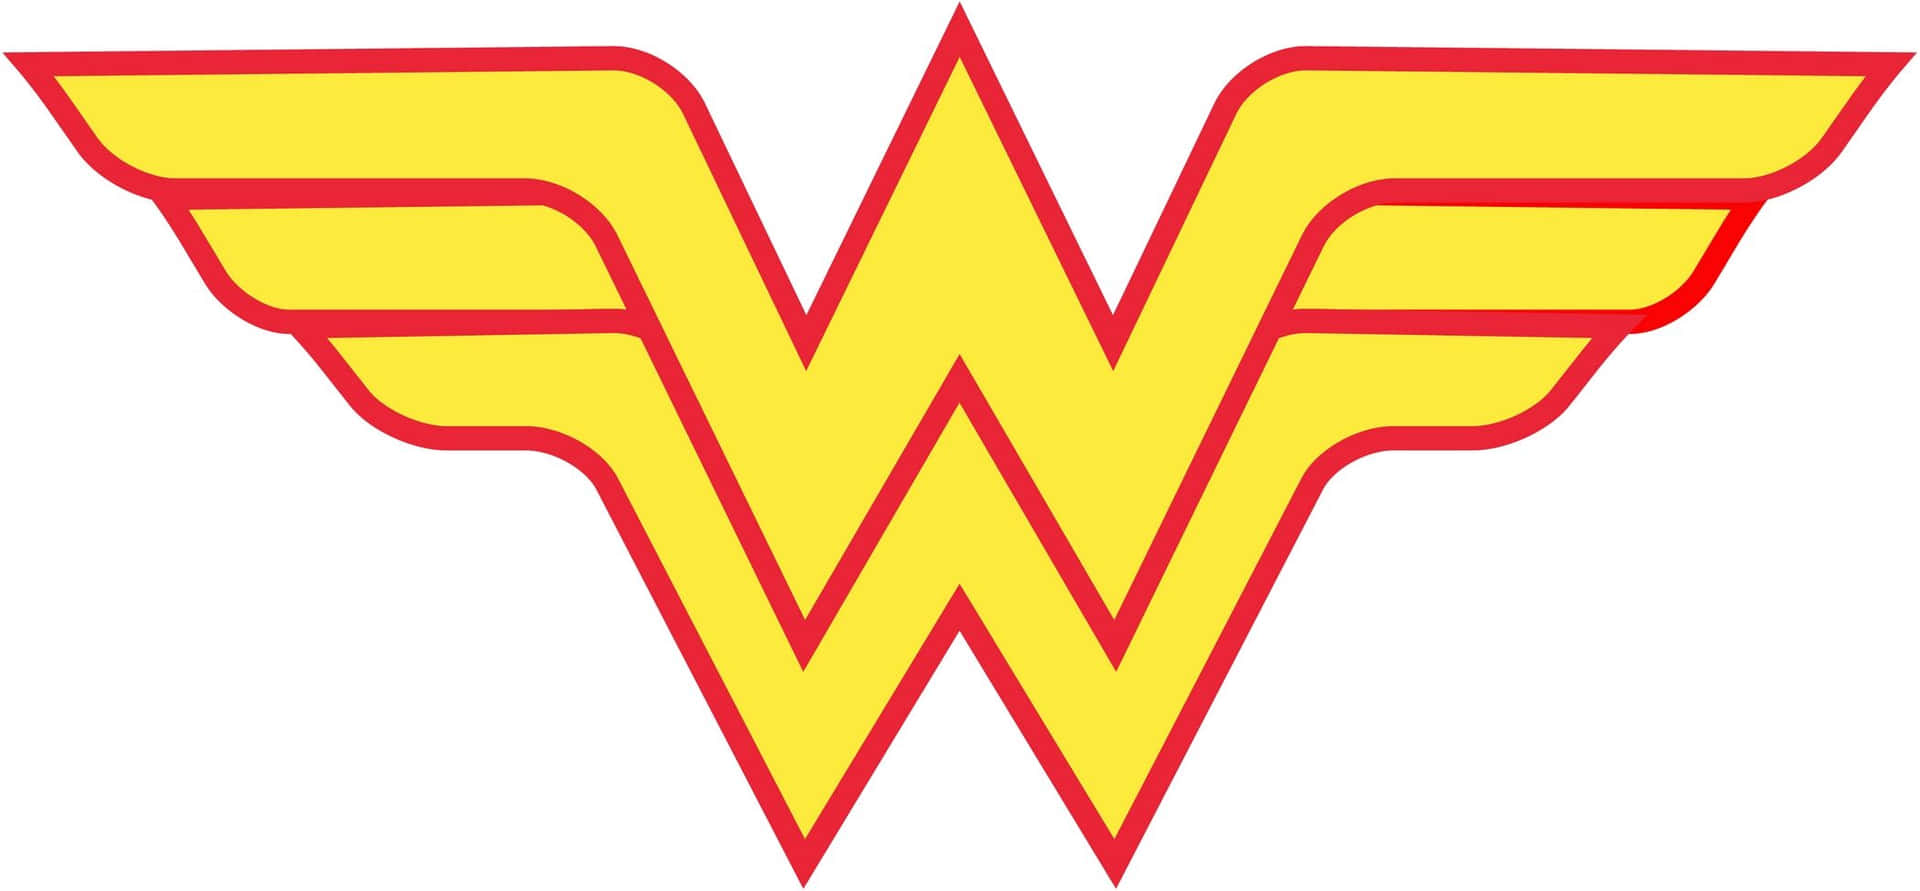 Wonderwoman 2100 X 974 Bakgrund